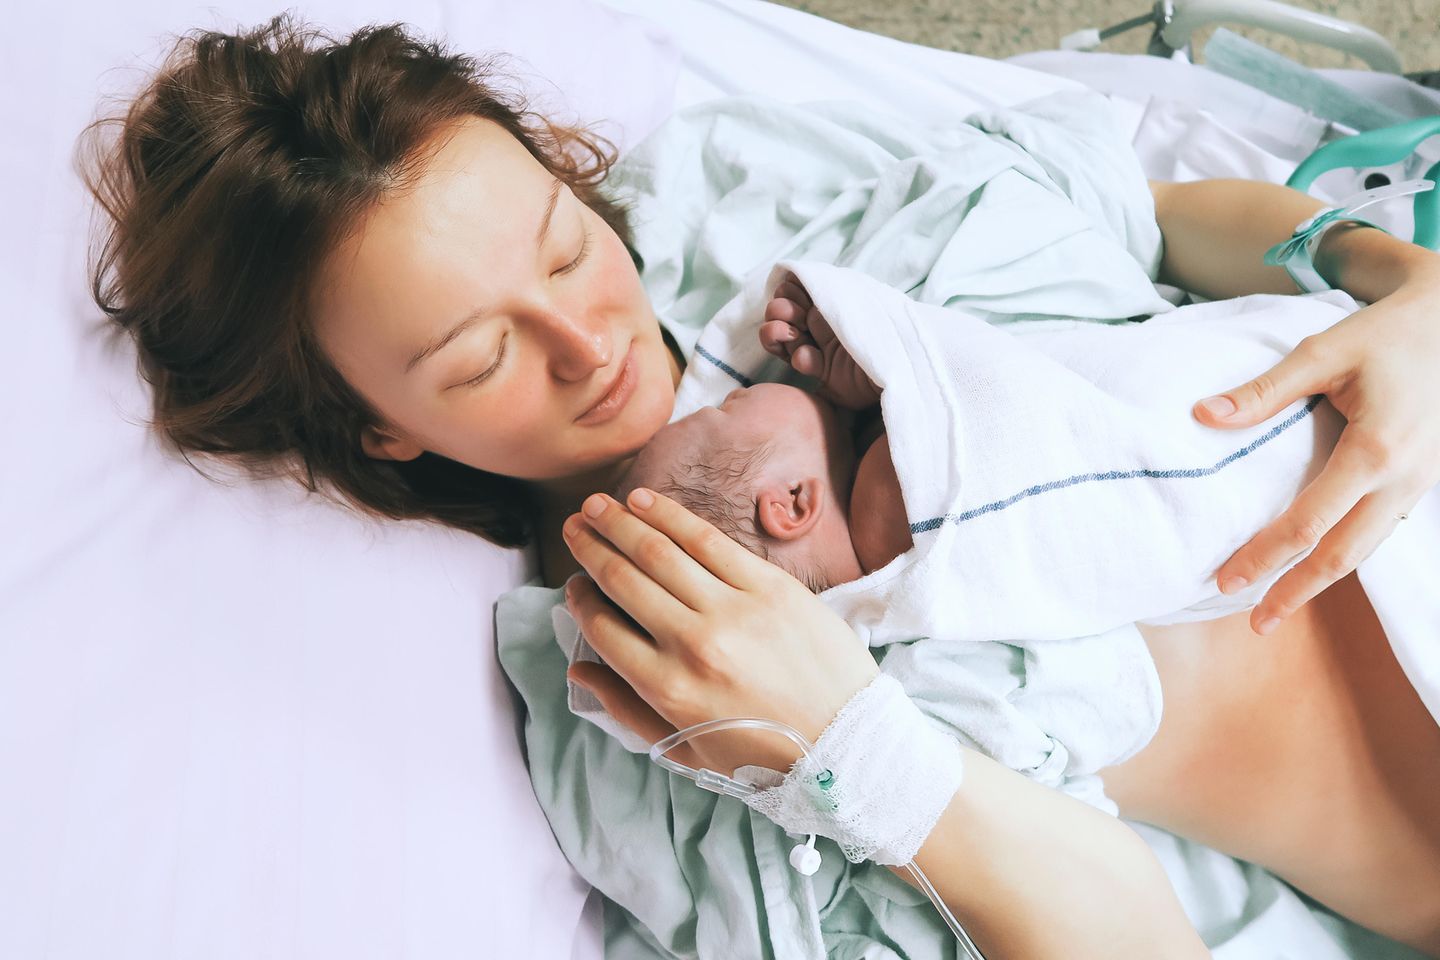 Mütter berichten: Geburten sind nicht so schlimm!